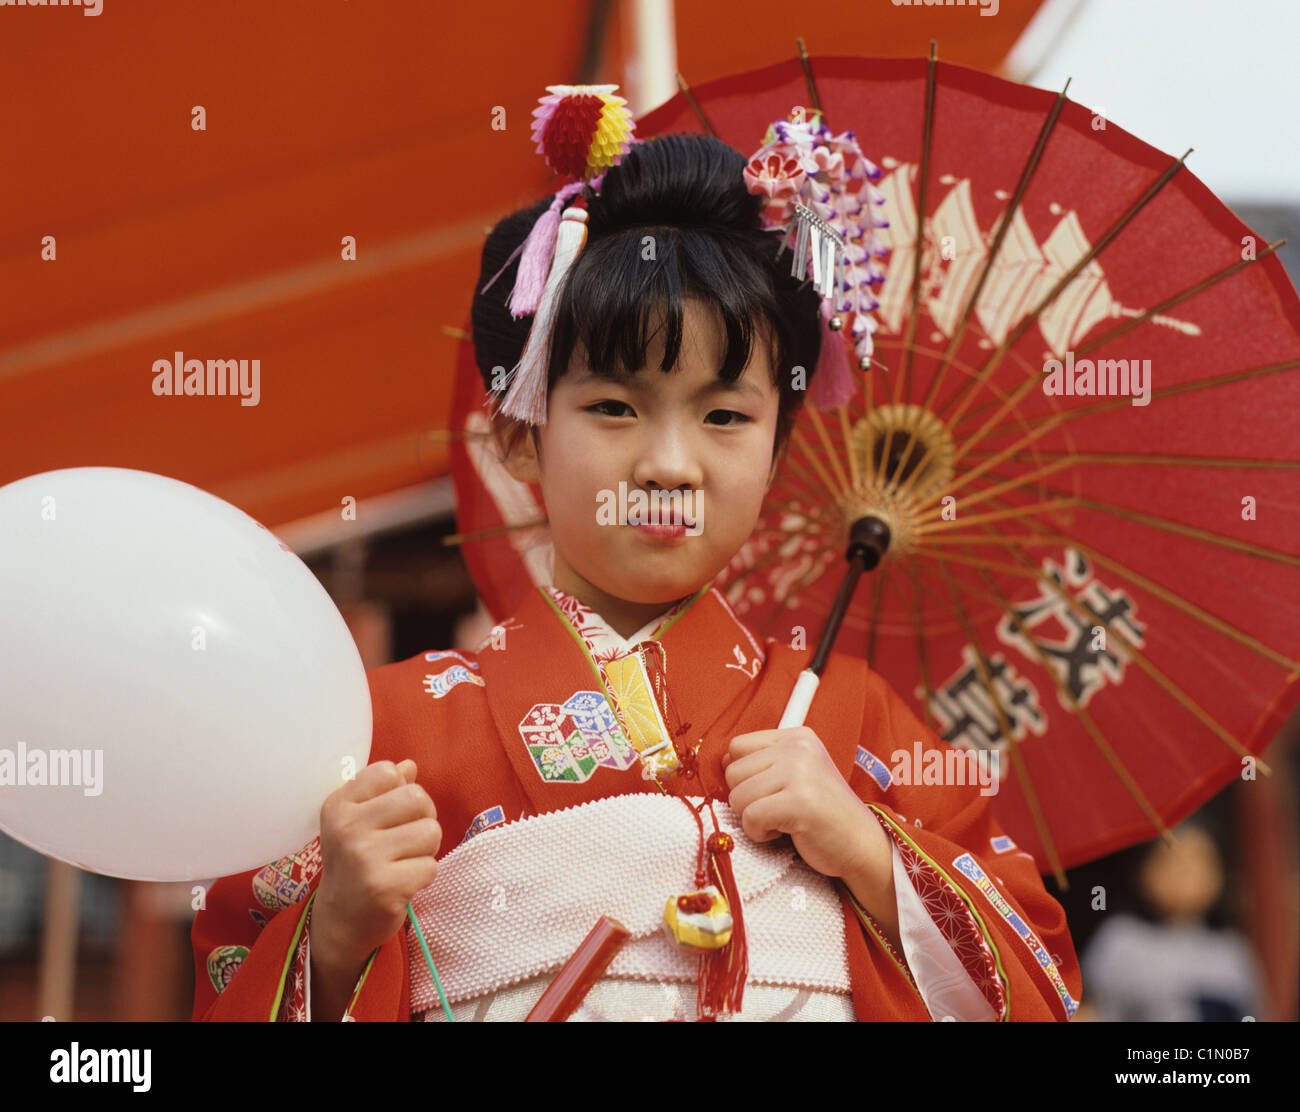 https://c8.alamy.com/compit/c1n0b7/bambino-giapponese-ragazza-in-kimono-tradizionali-con-ombrellone-c1n0b7.jpg